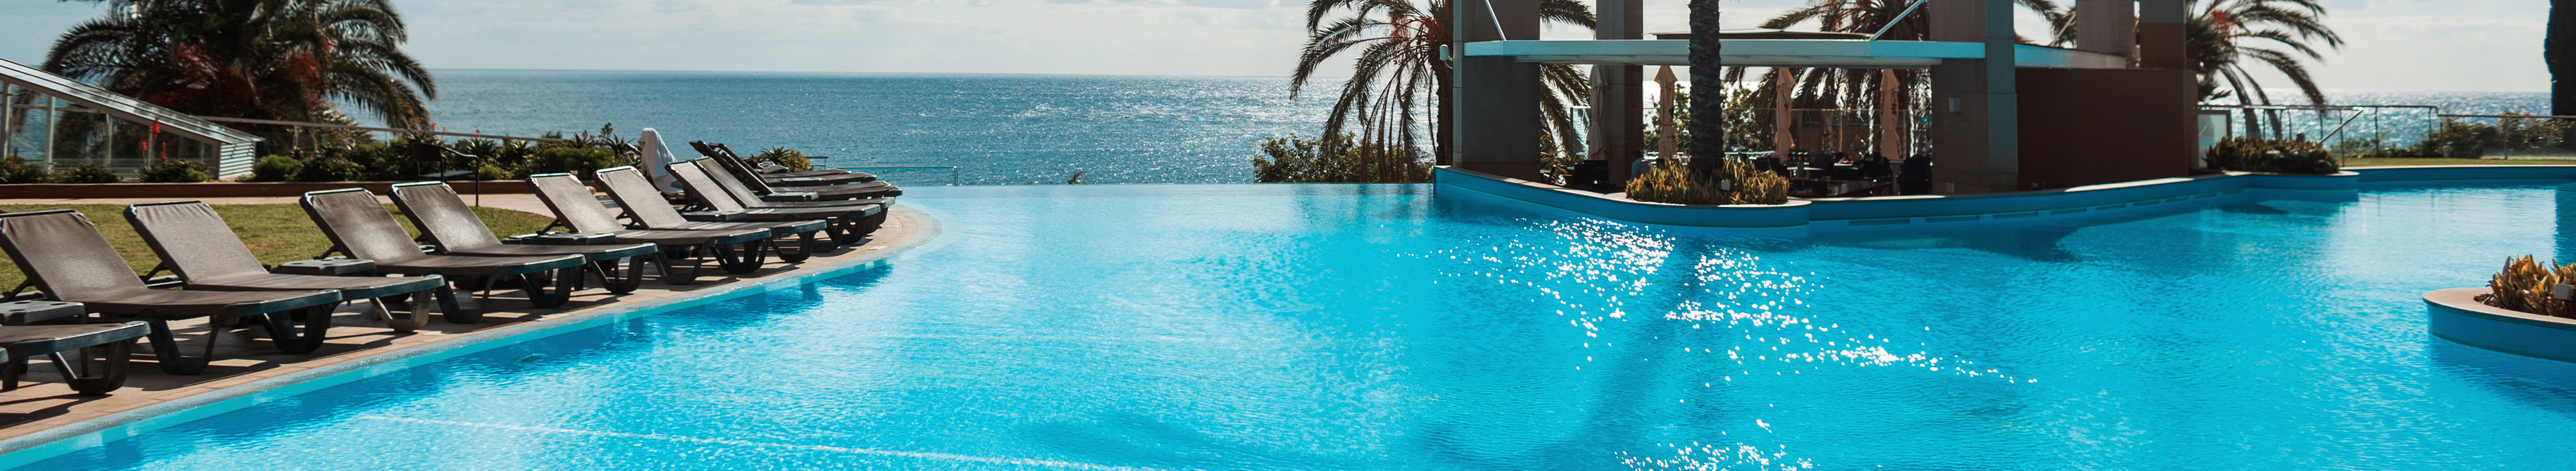 Hotel auf Madeira, Pool und Blick auf das Meer. Am Rand Liegestühle und Palmen.